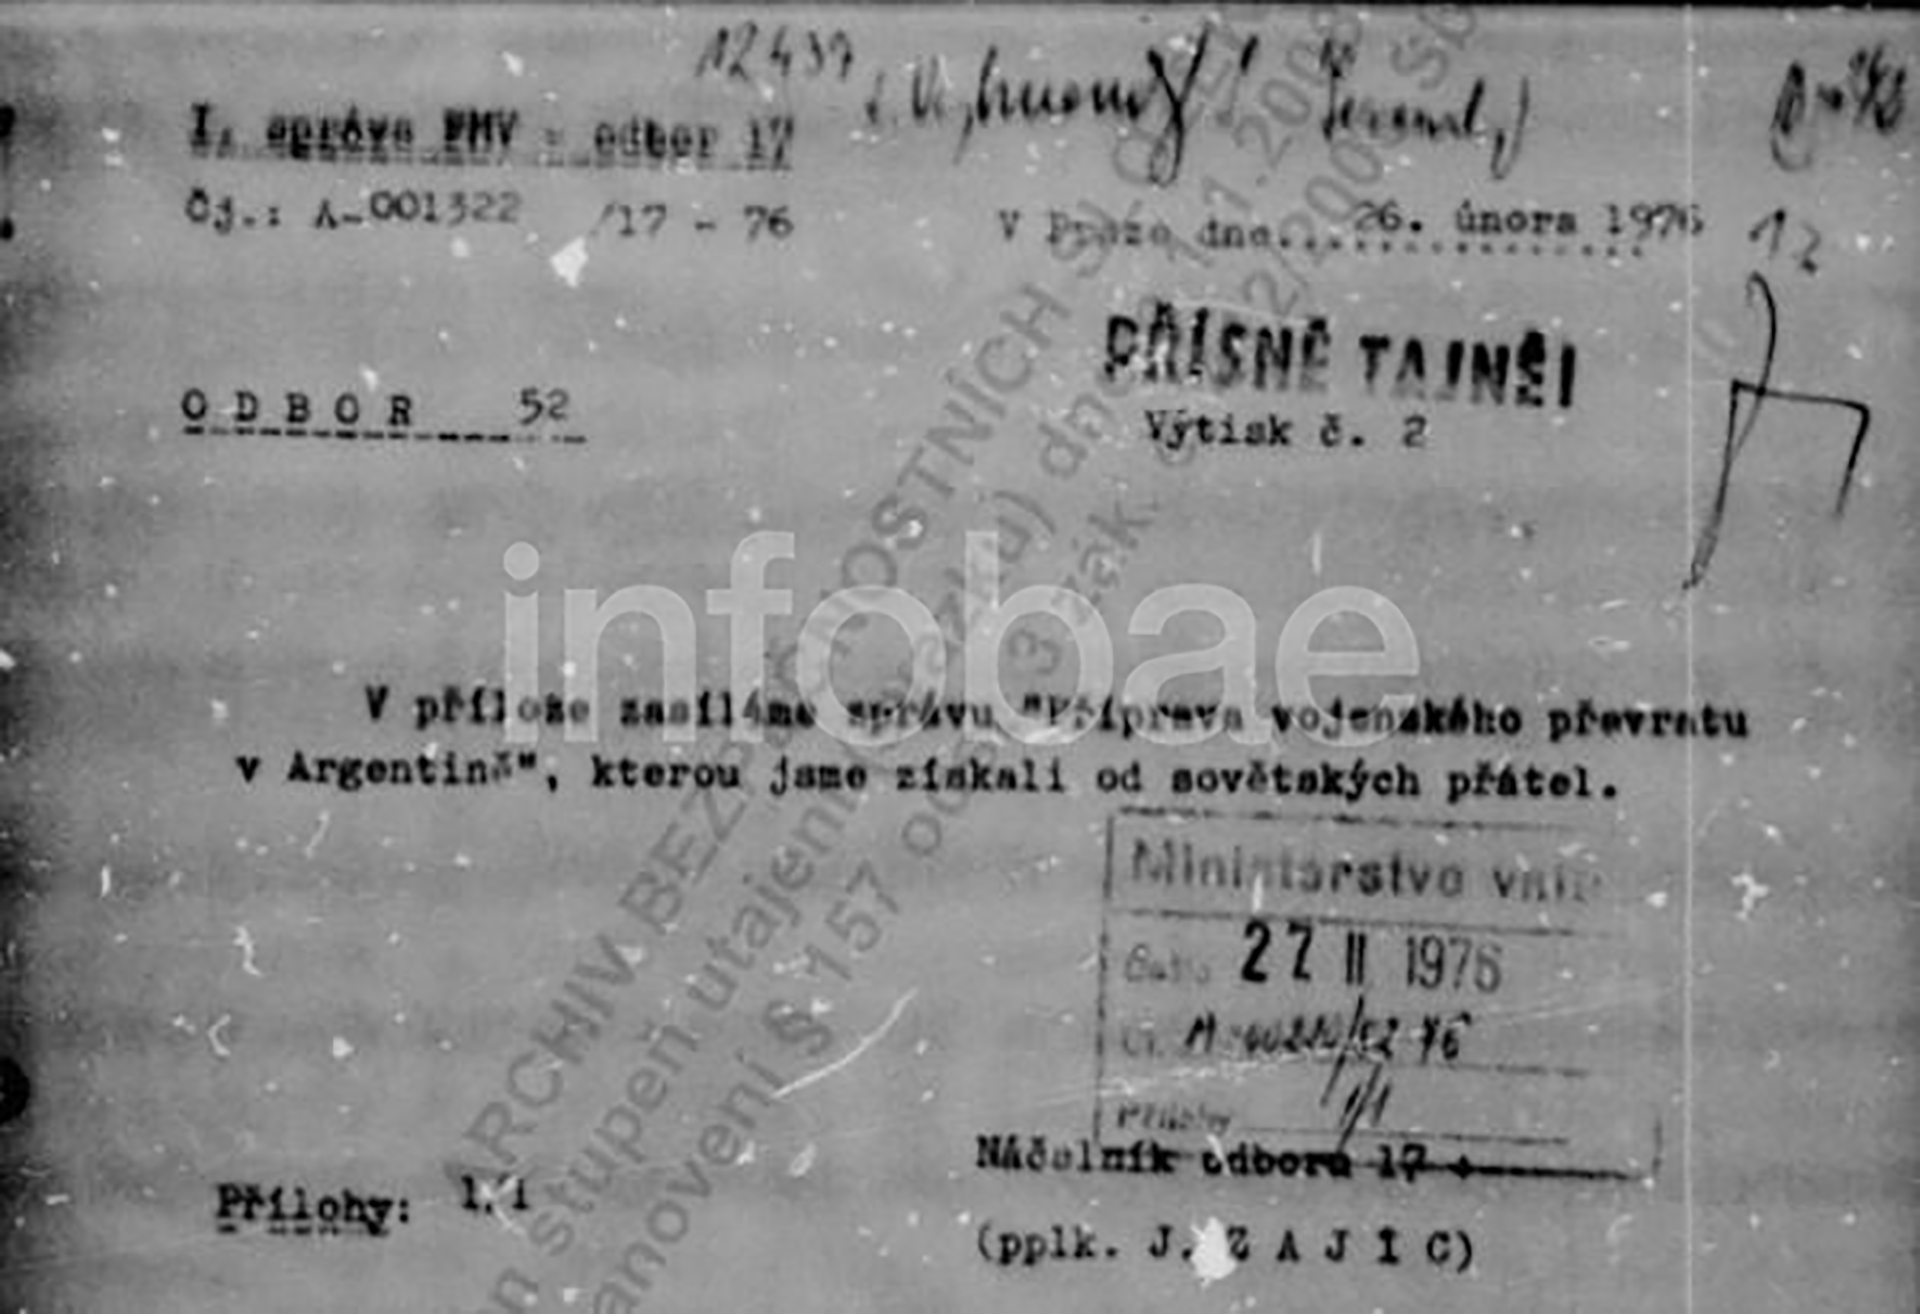 Copia de la nota que acompaña el informe soviético sobre la entrevista entre Videla y Balbín